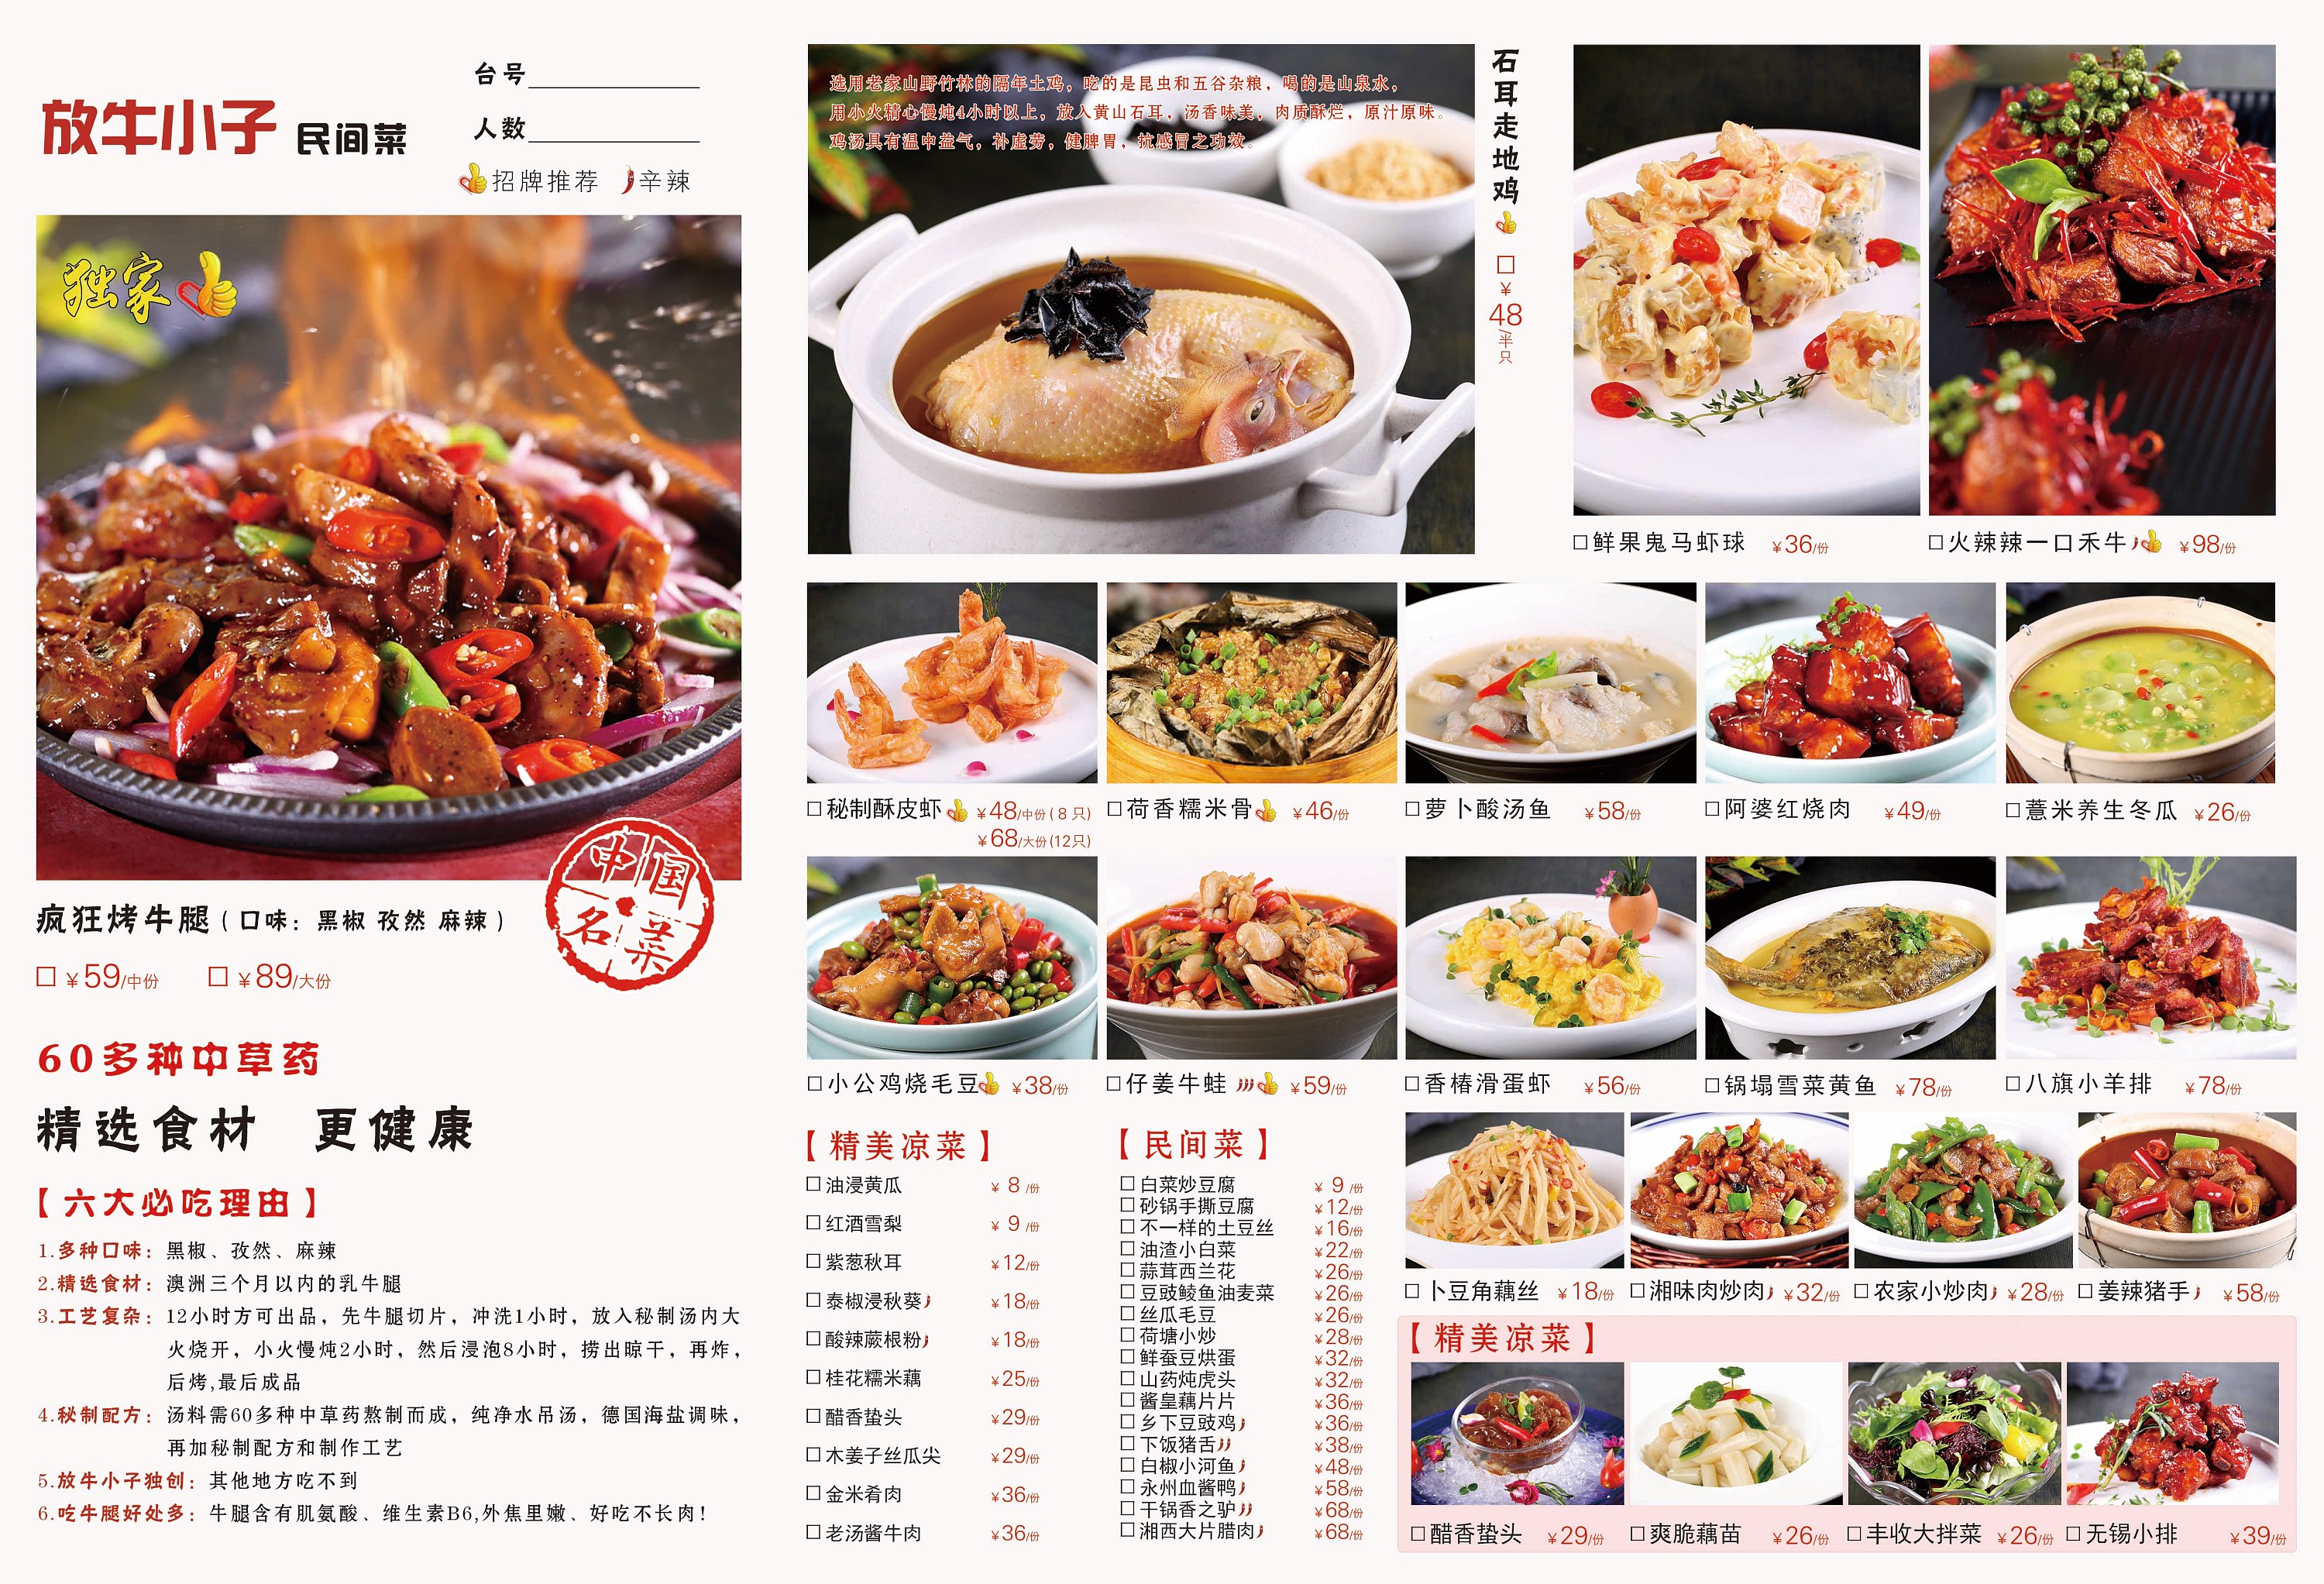 【食堂菜单】食堂菜单平面模板_食堂菜单素材下载-稿定素材